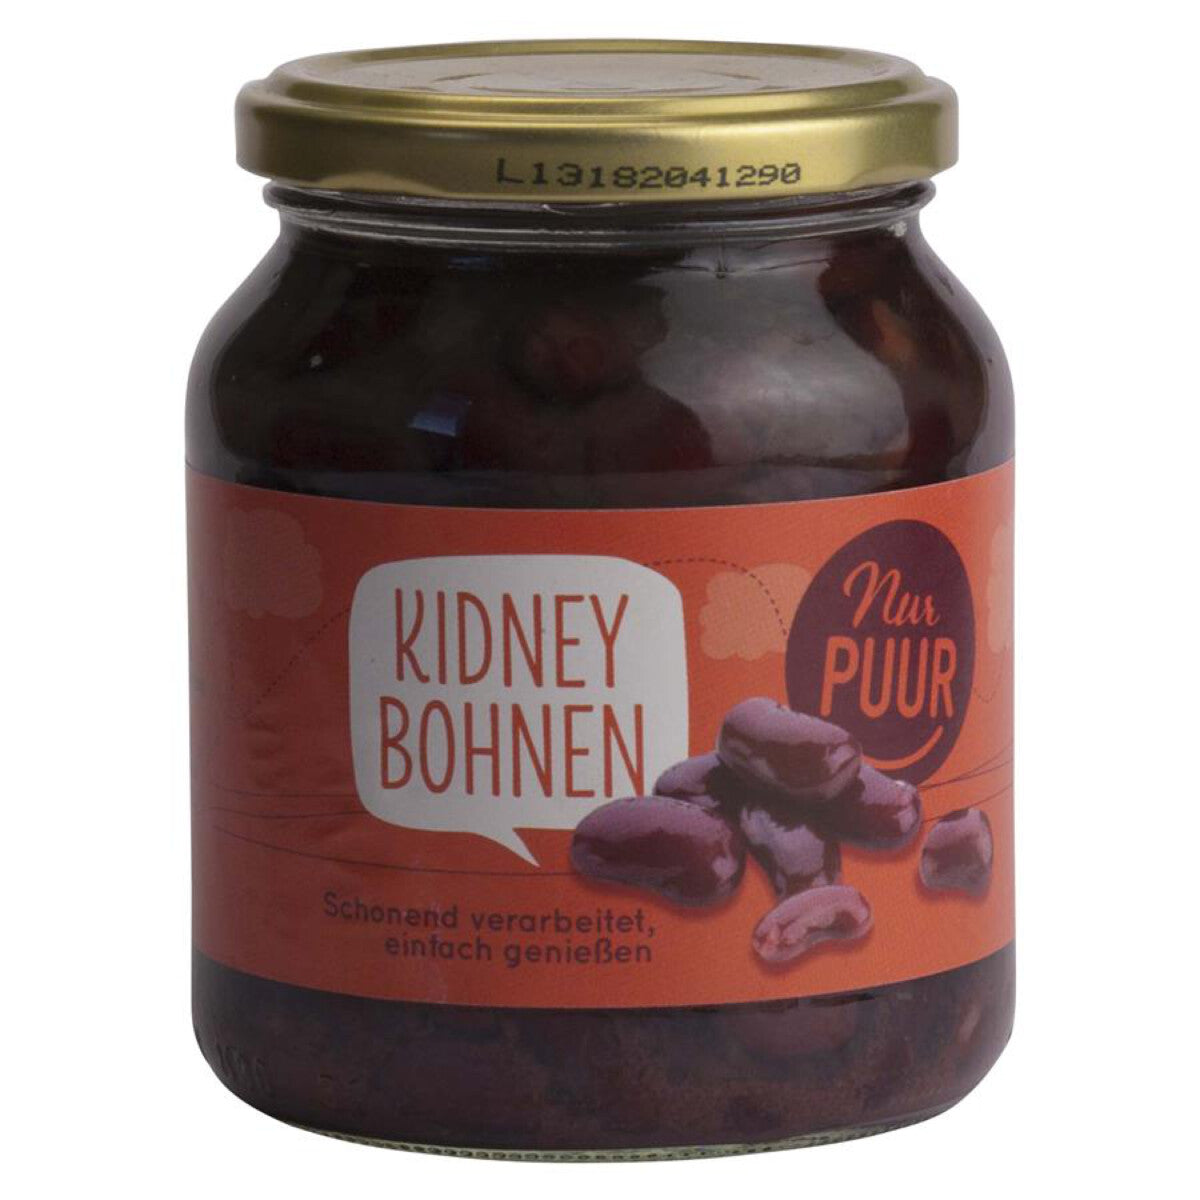 NUR PUUR Kidneybohnen - 350 g